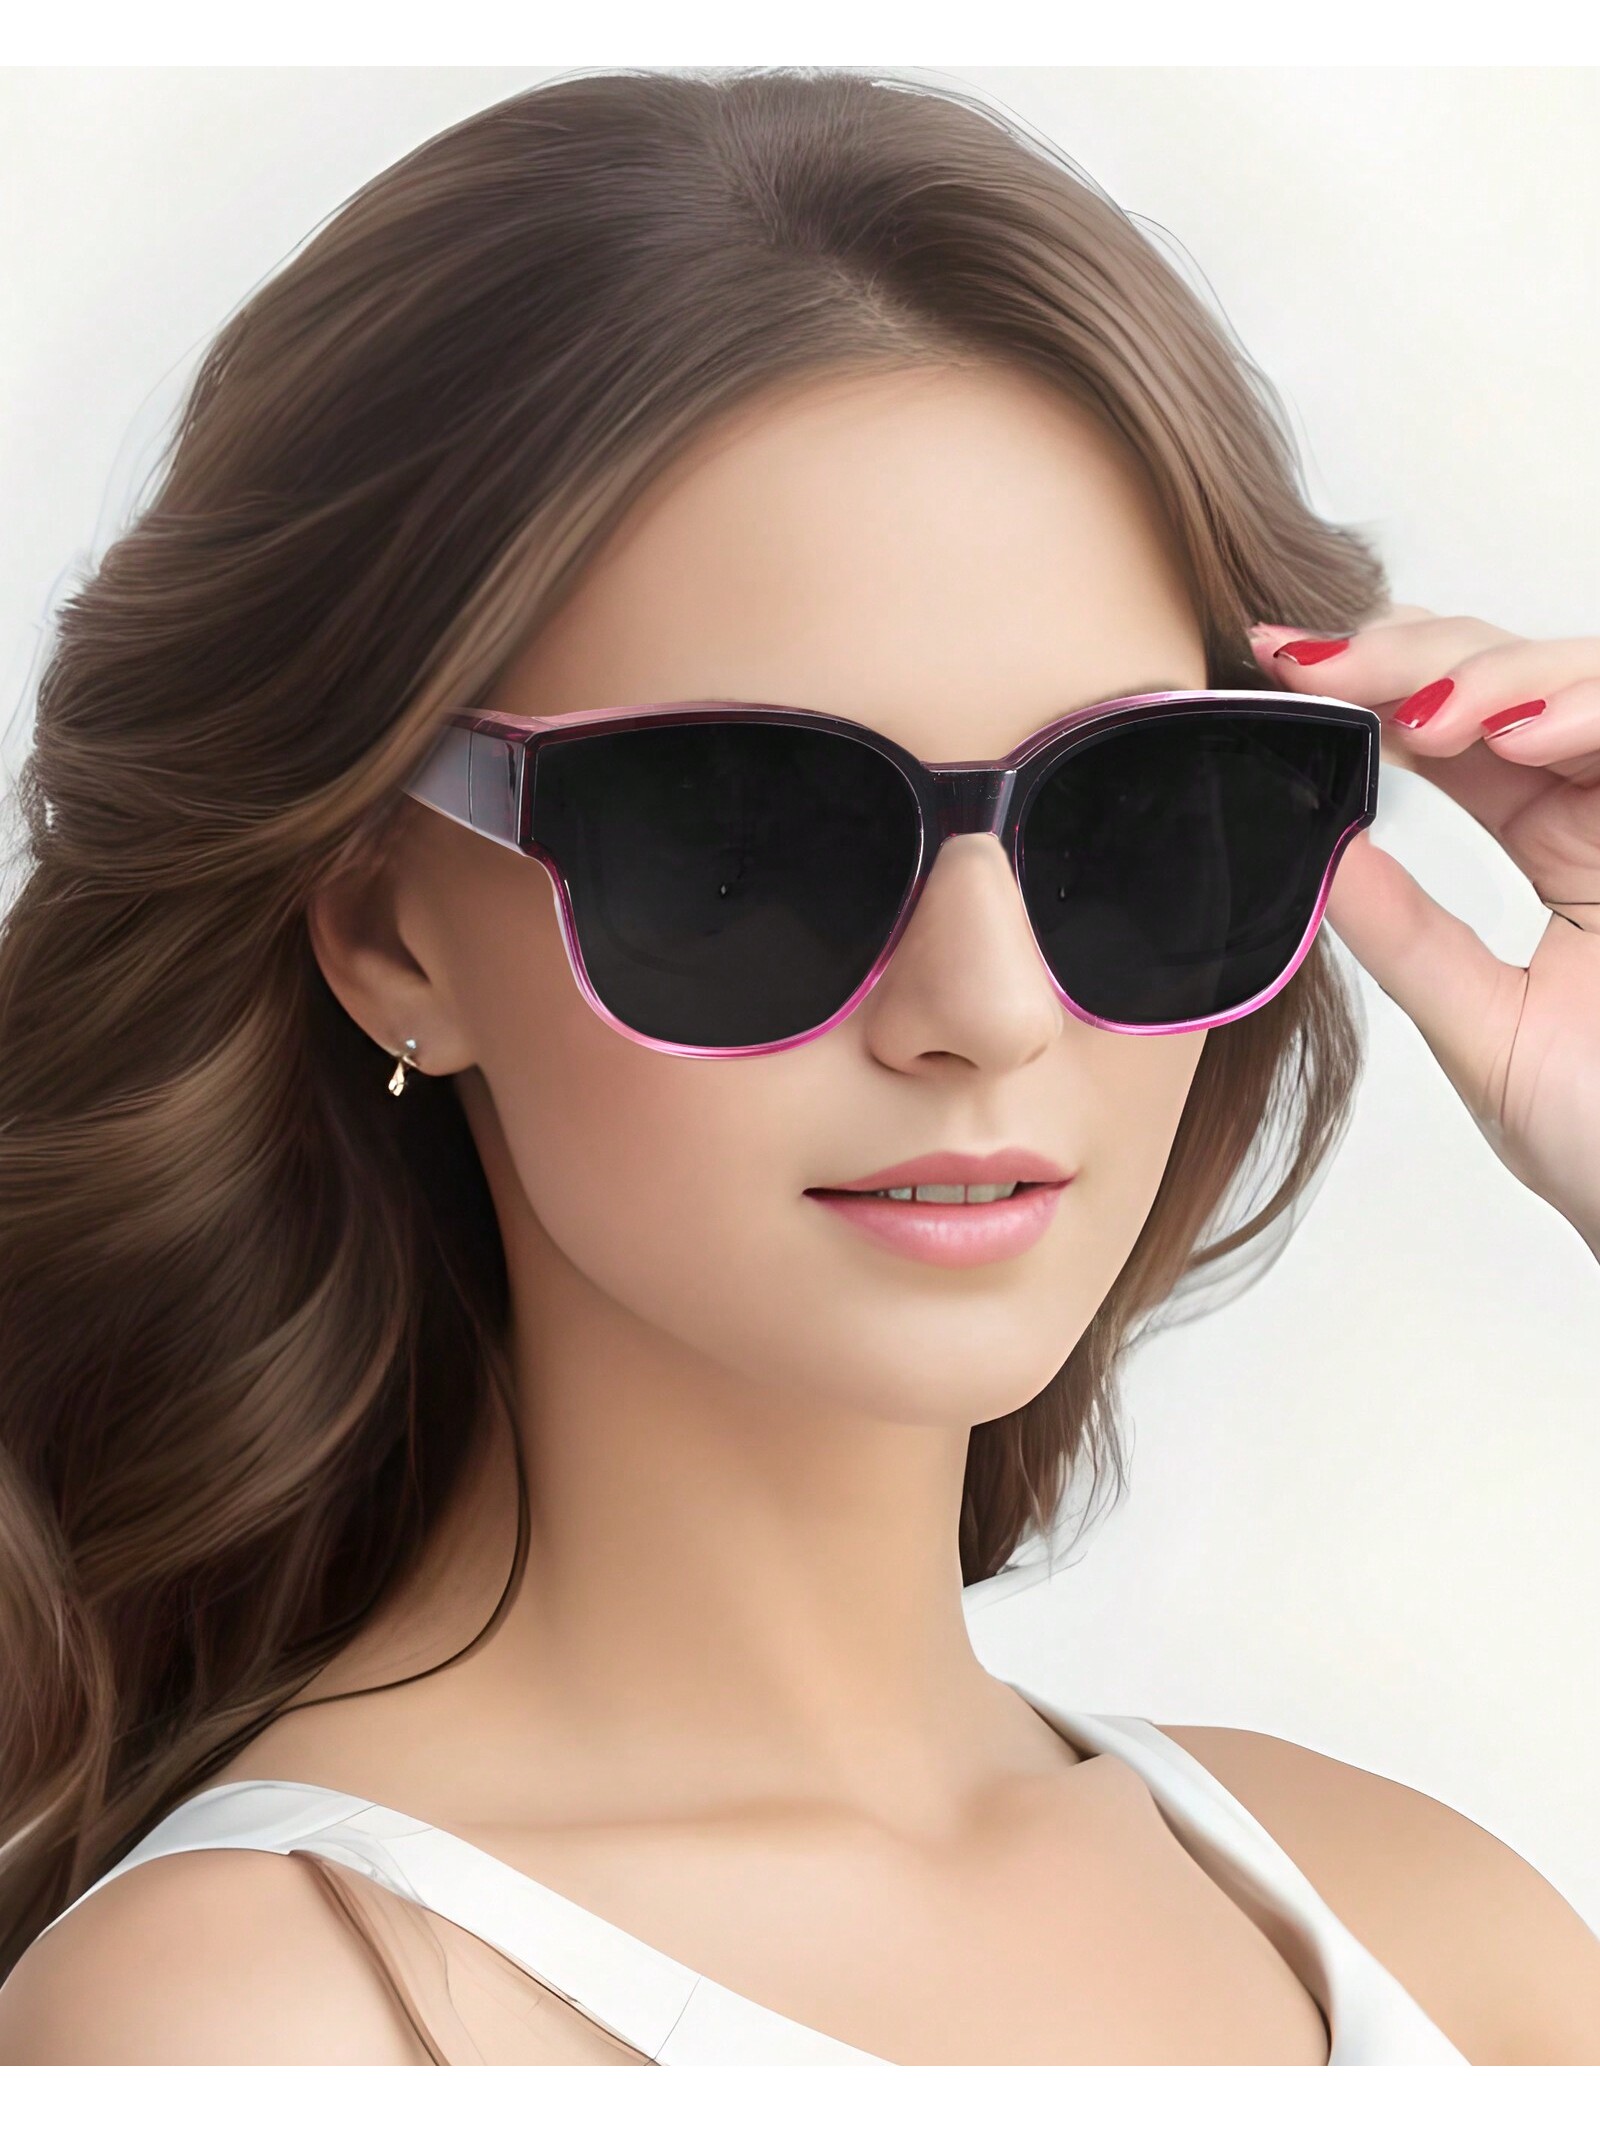 LVIOE поляризационные солнцезащитные очки для женщин и мужчин цена и фото